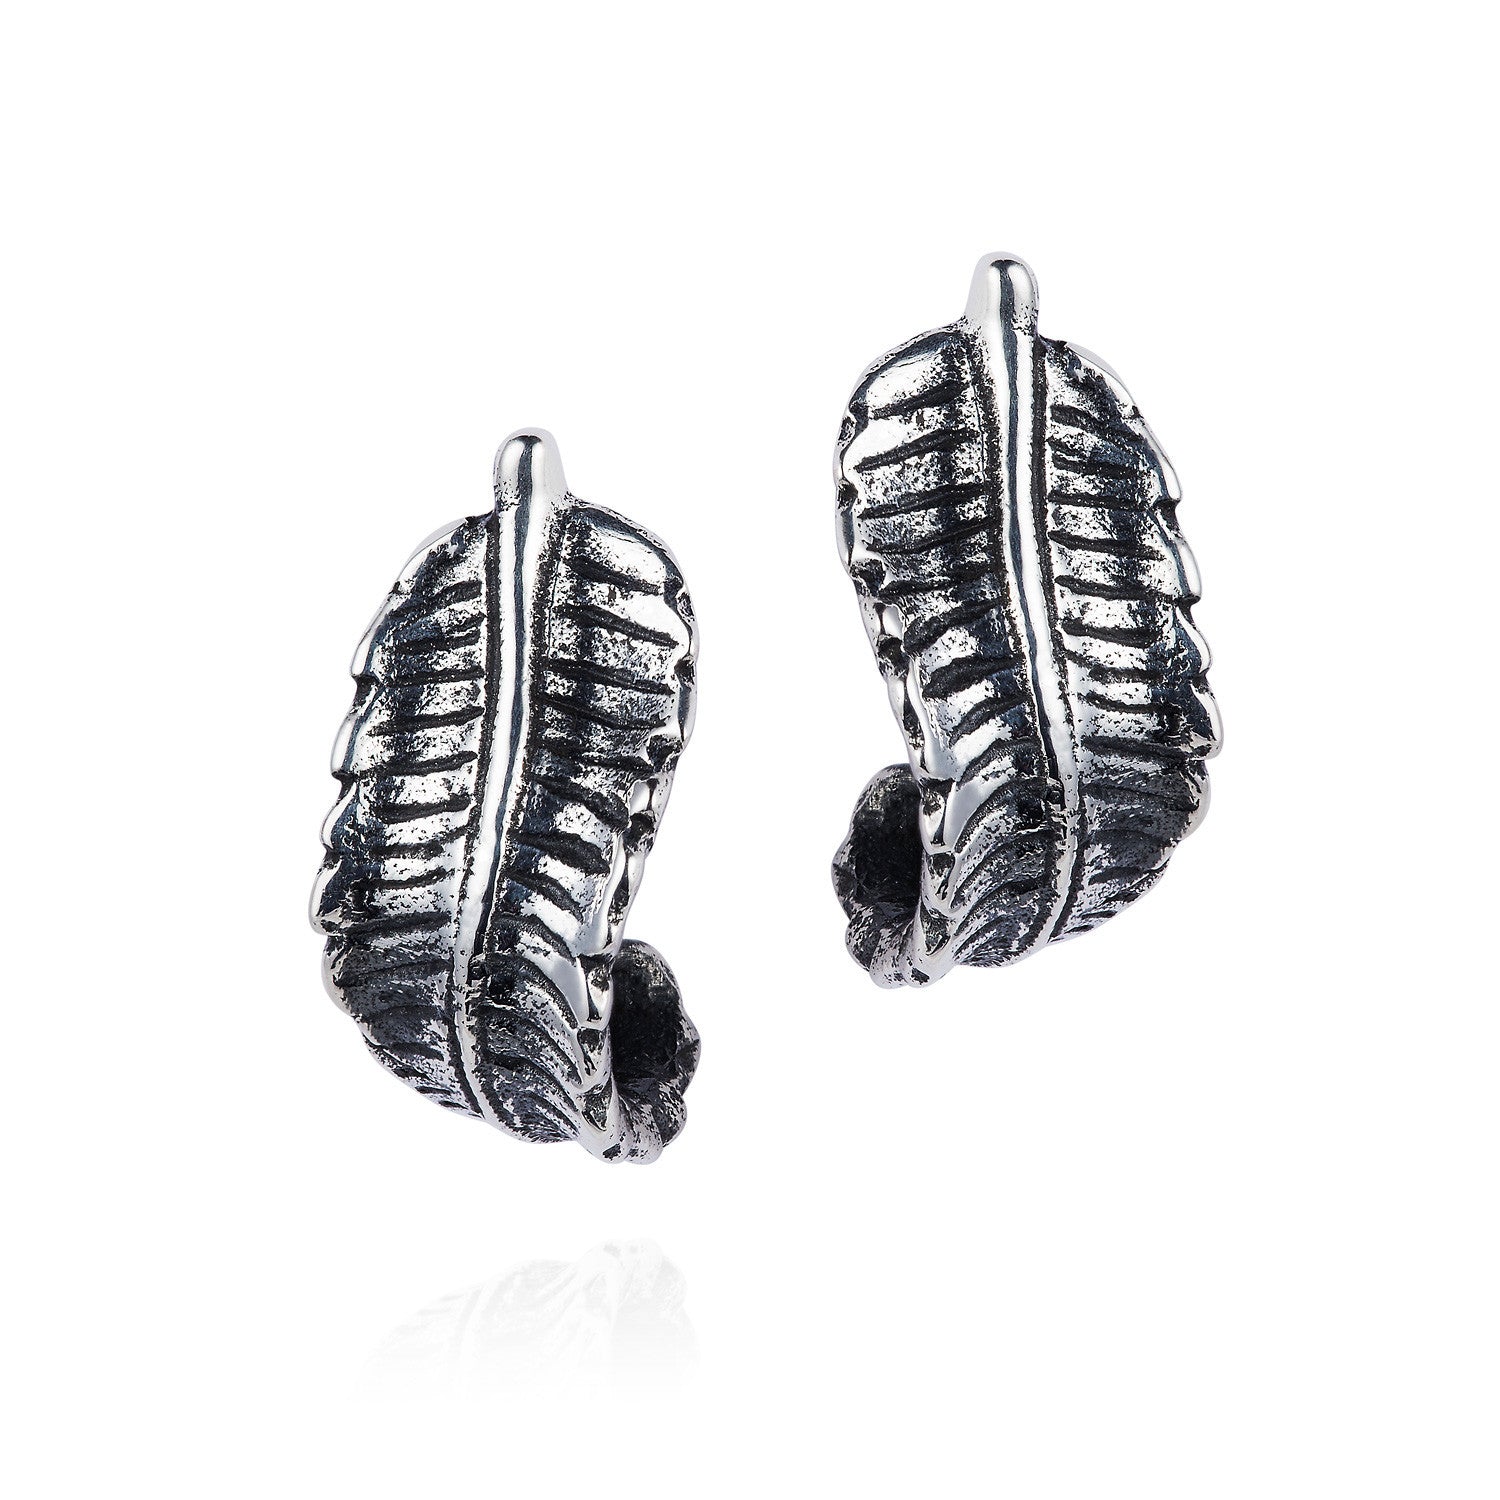 Curled silver Fern Earrings